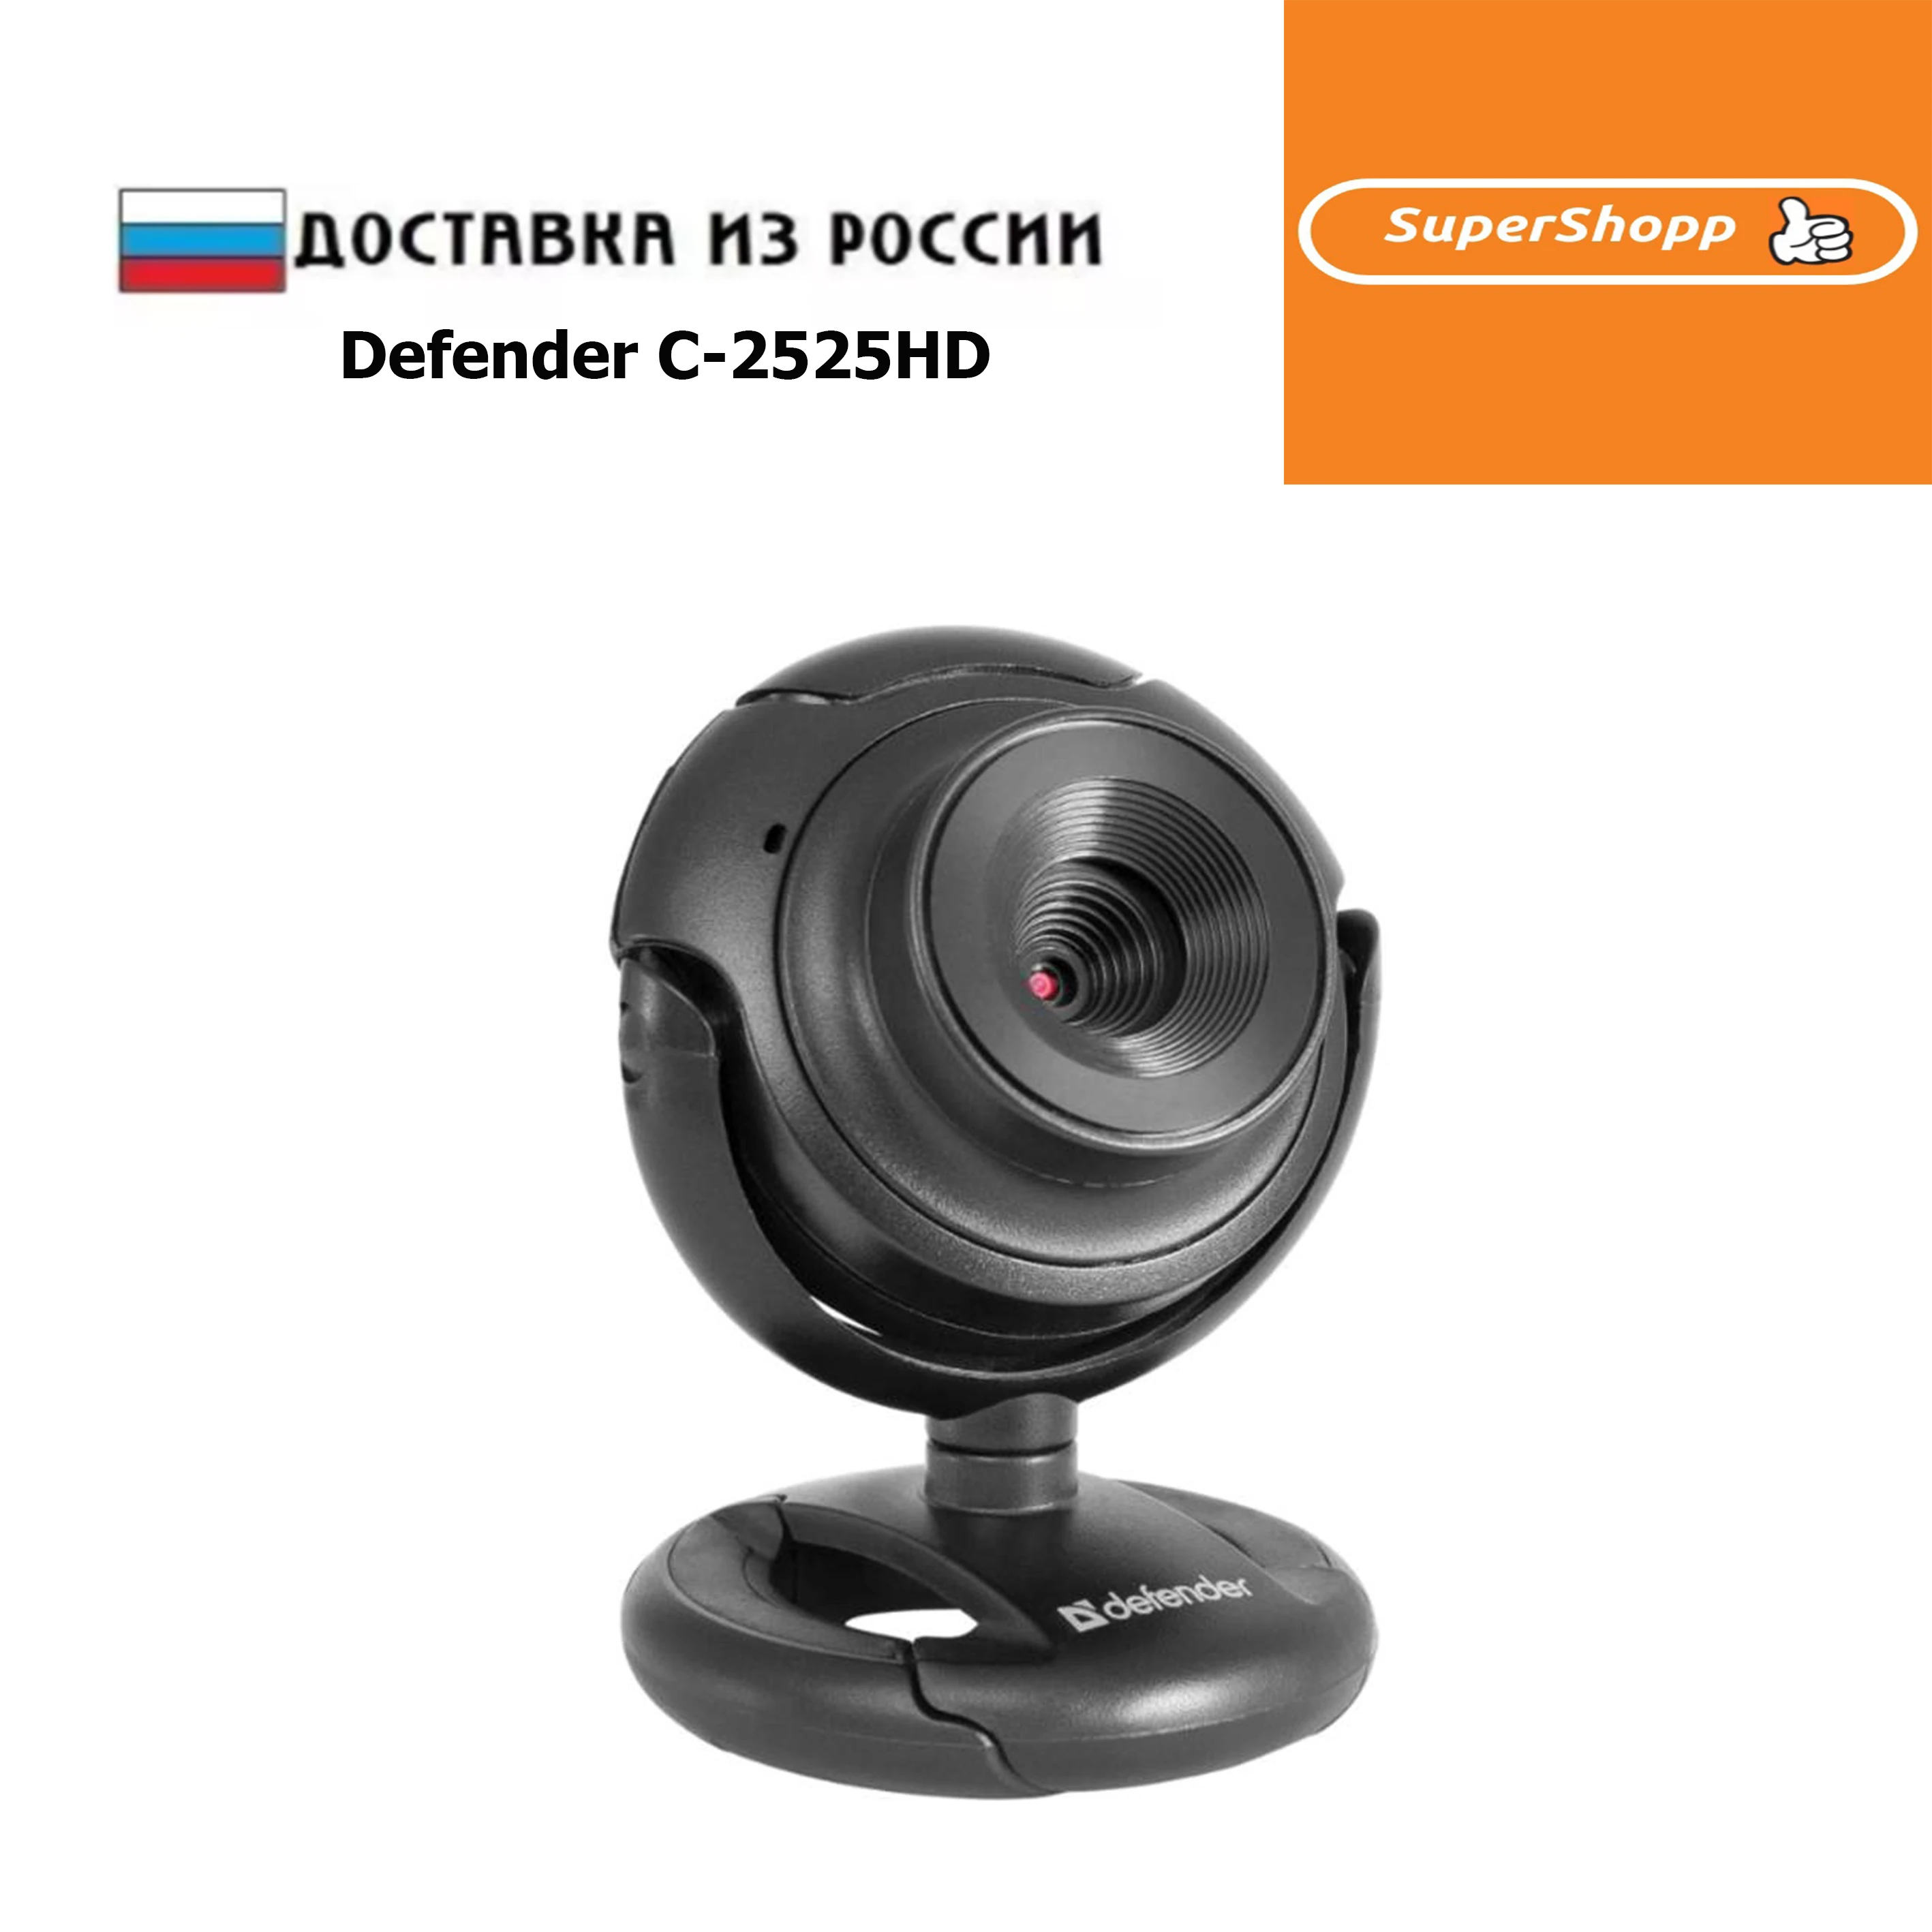 Defender 2525hd. Веб-камера Defender c-2525hd. Defender c-2525hd. Веб камера Дефендер. Веб камера Defender.